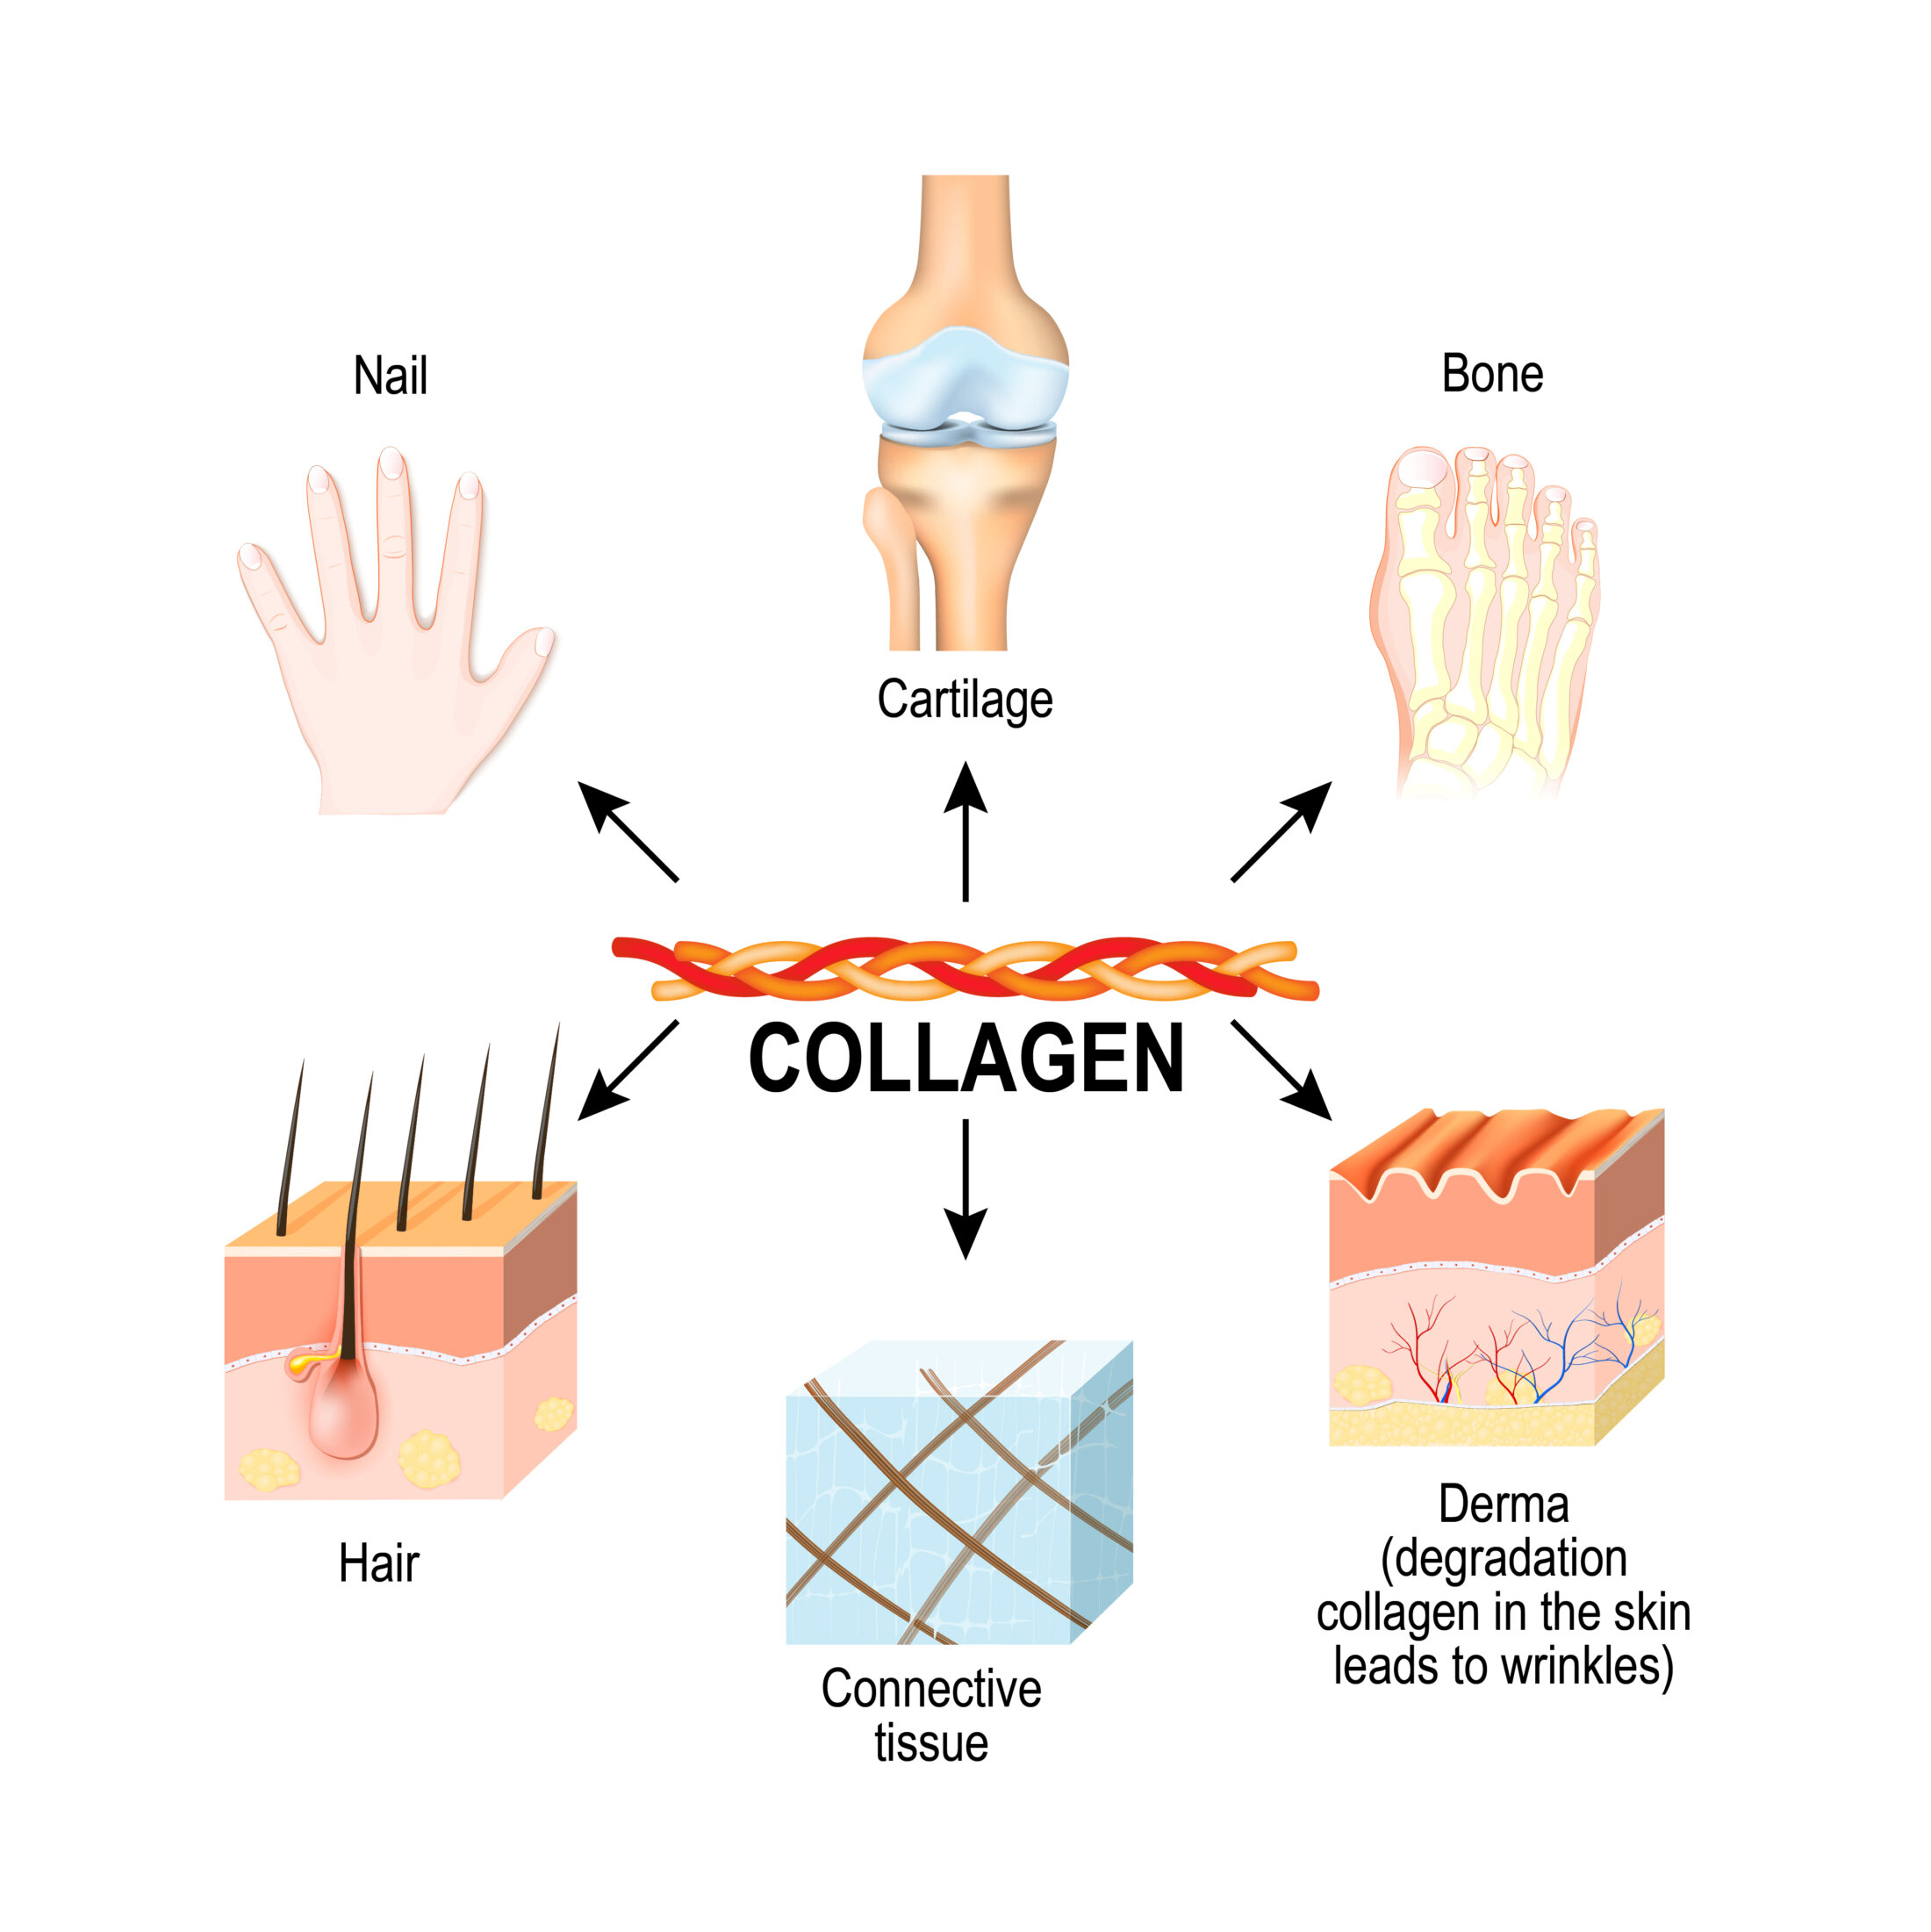 Collagen tạo nên cấu trúc nền của gân, dây chằng, da và xương